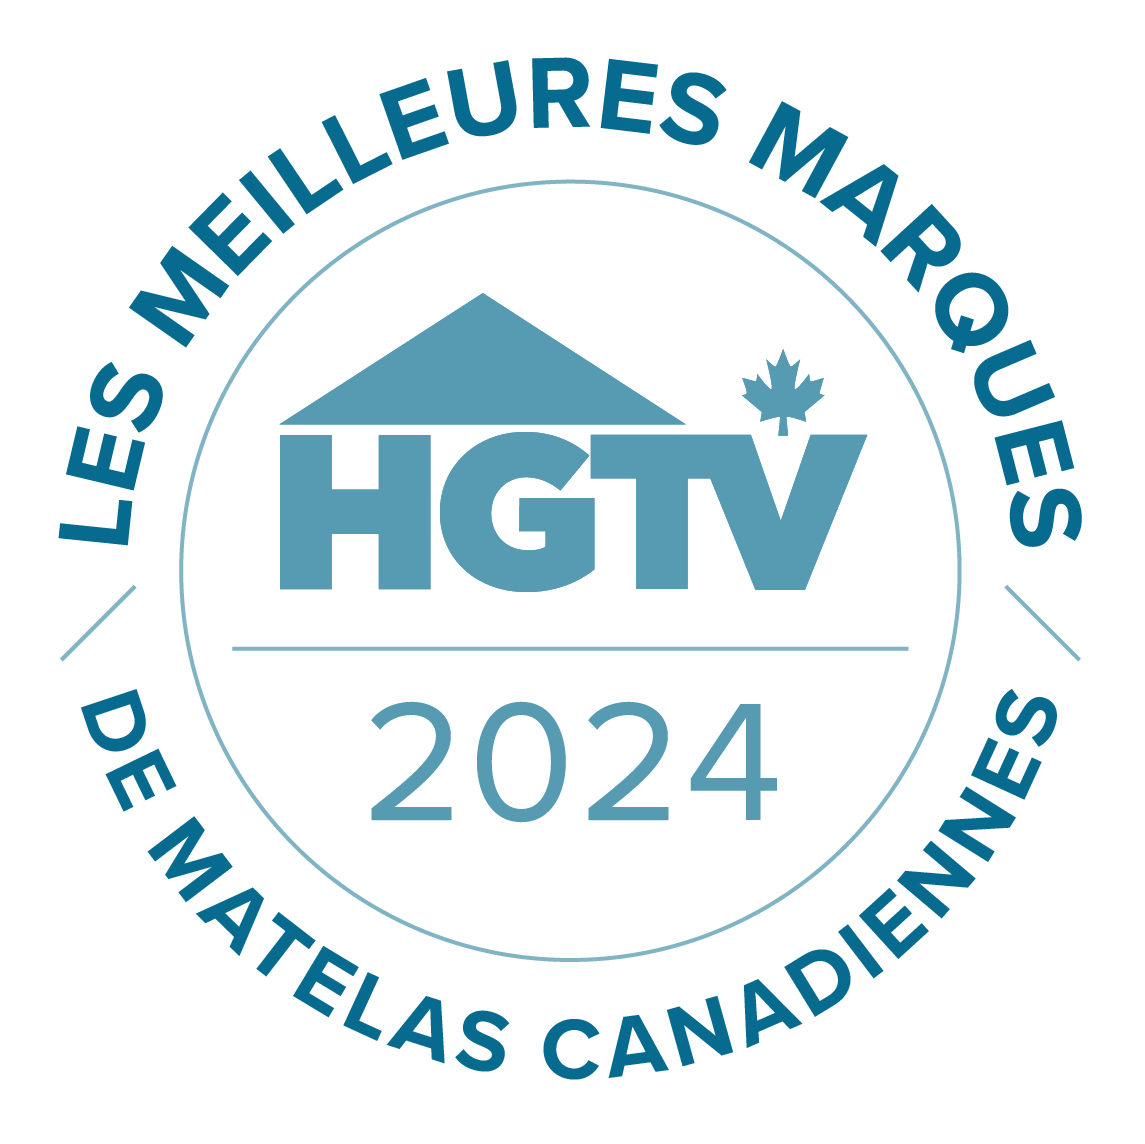 Les meilleures marques de matelas canadiennes - 2024 - HGTV